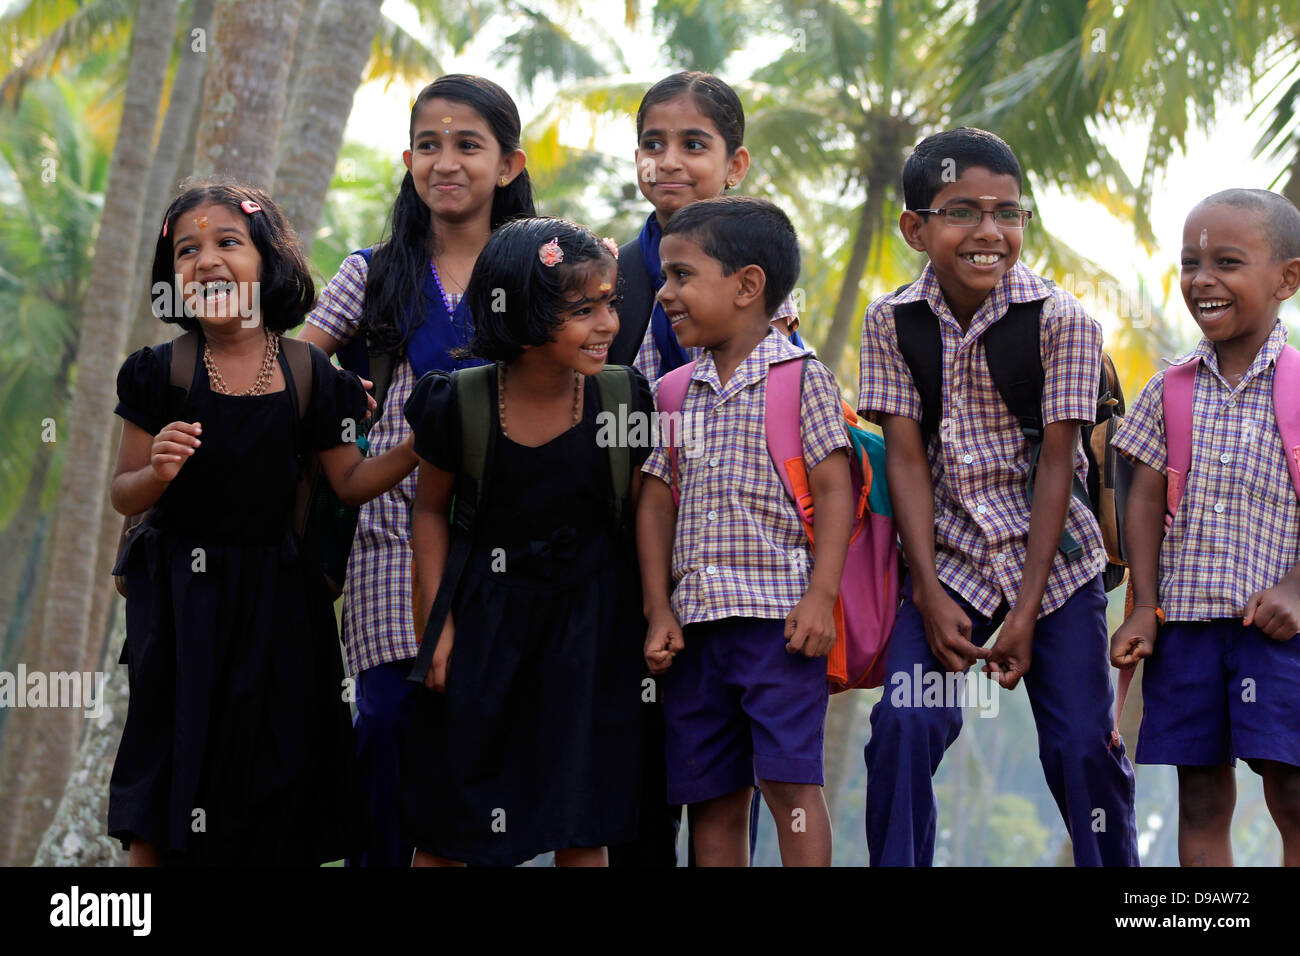 Les enfants de l'école posent joyeusement. Kerala, Inde rurale Banque D'Images